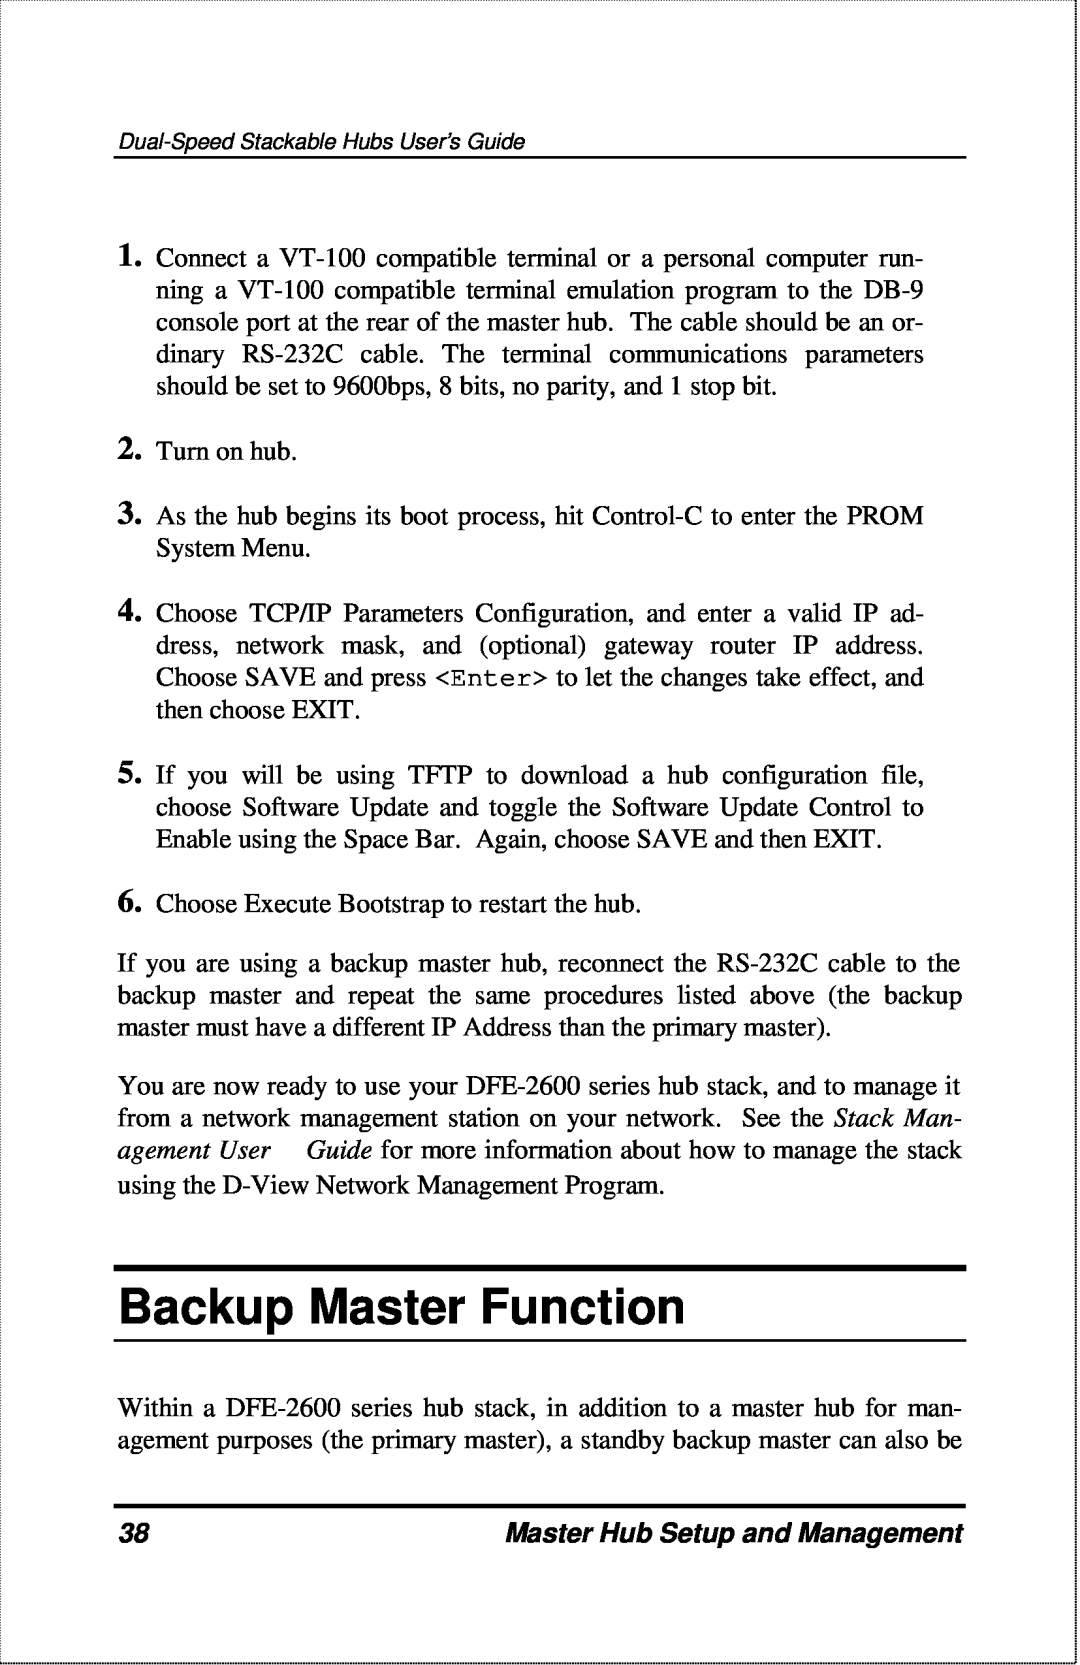 D-Link DFE-2600 manual Backup Master Function, Master Hub Setup and Management 